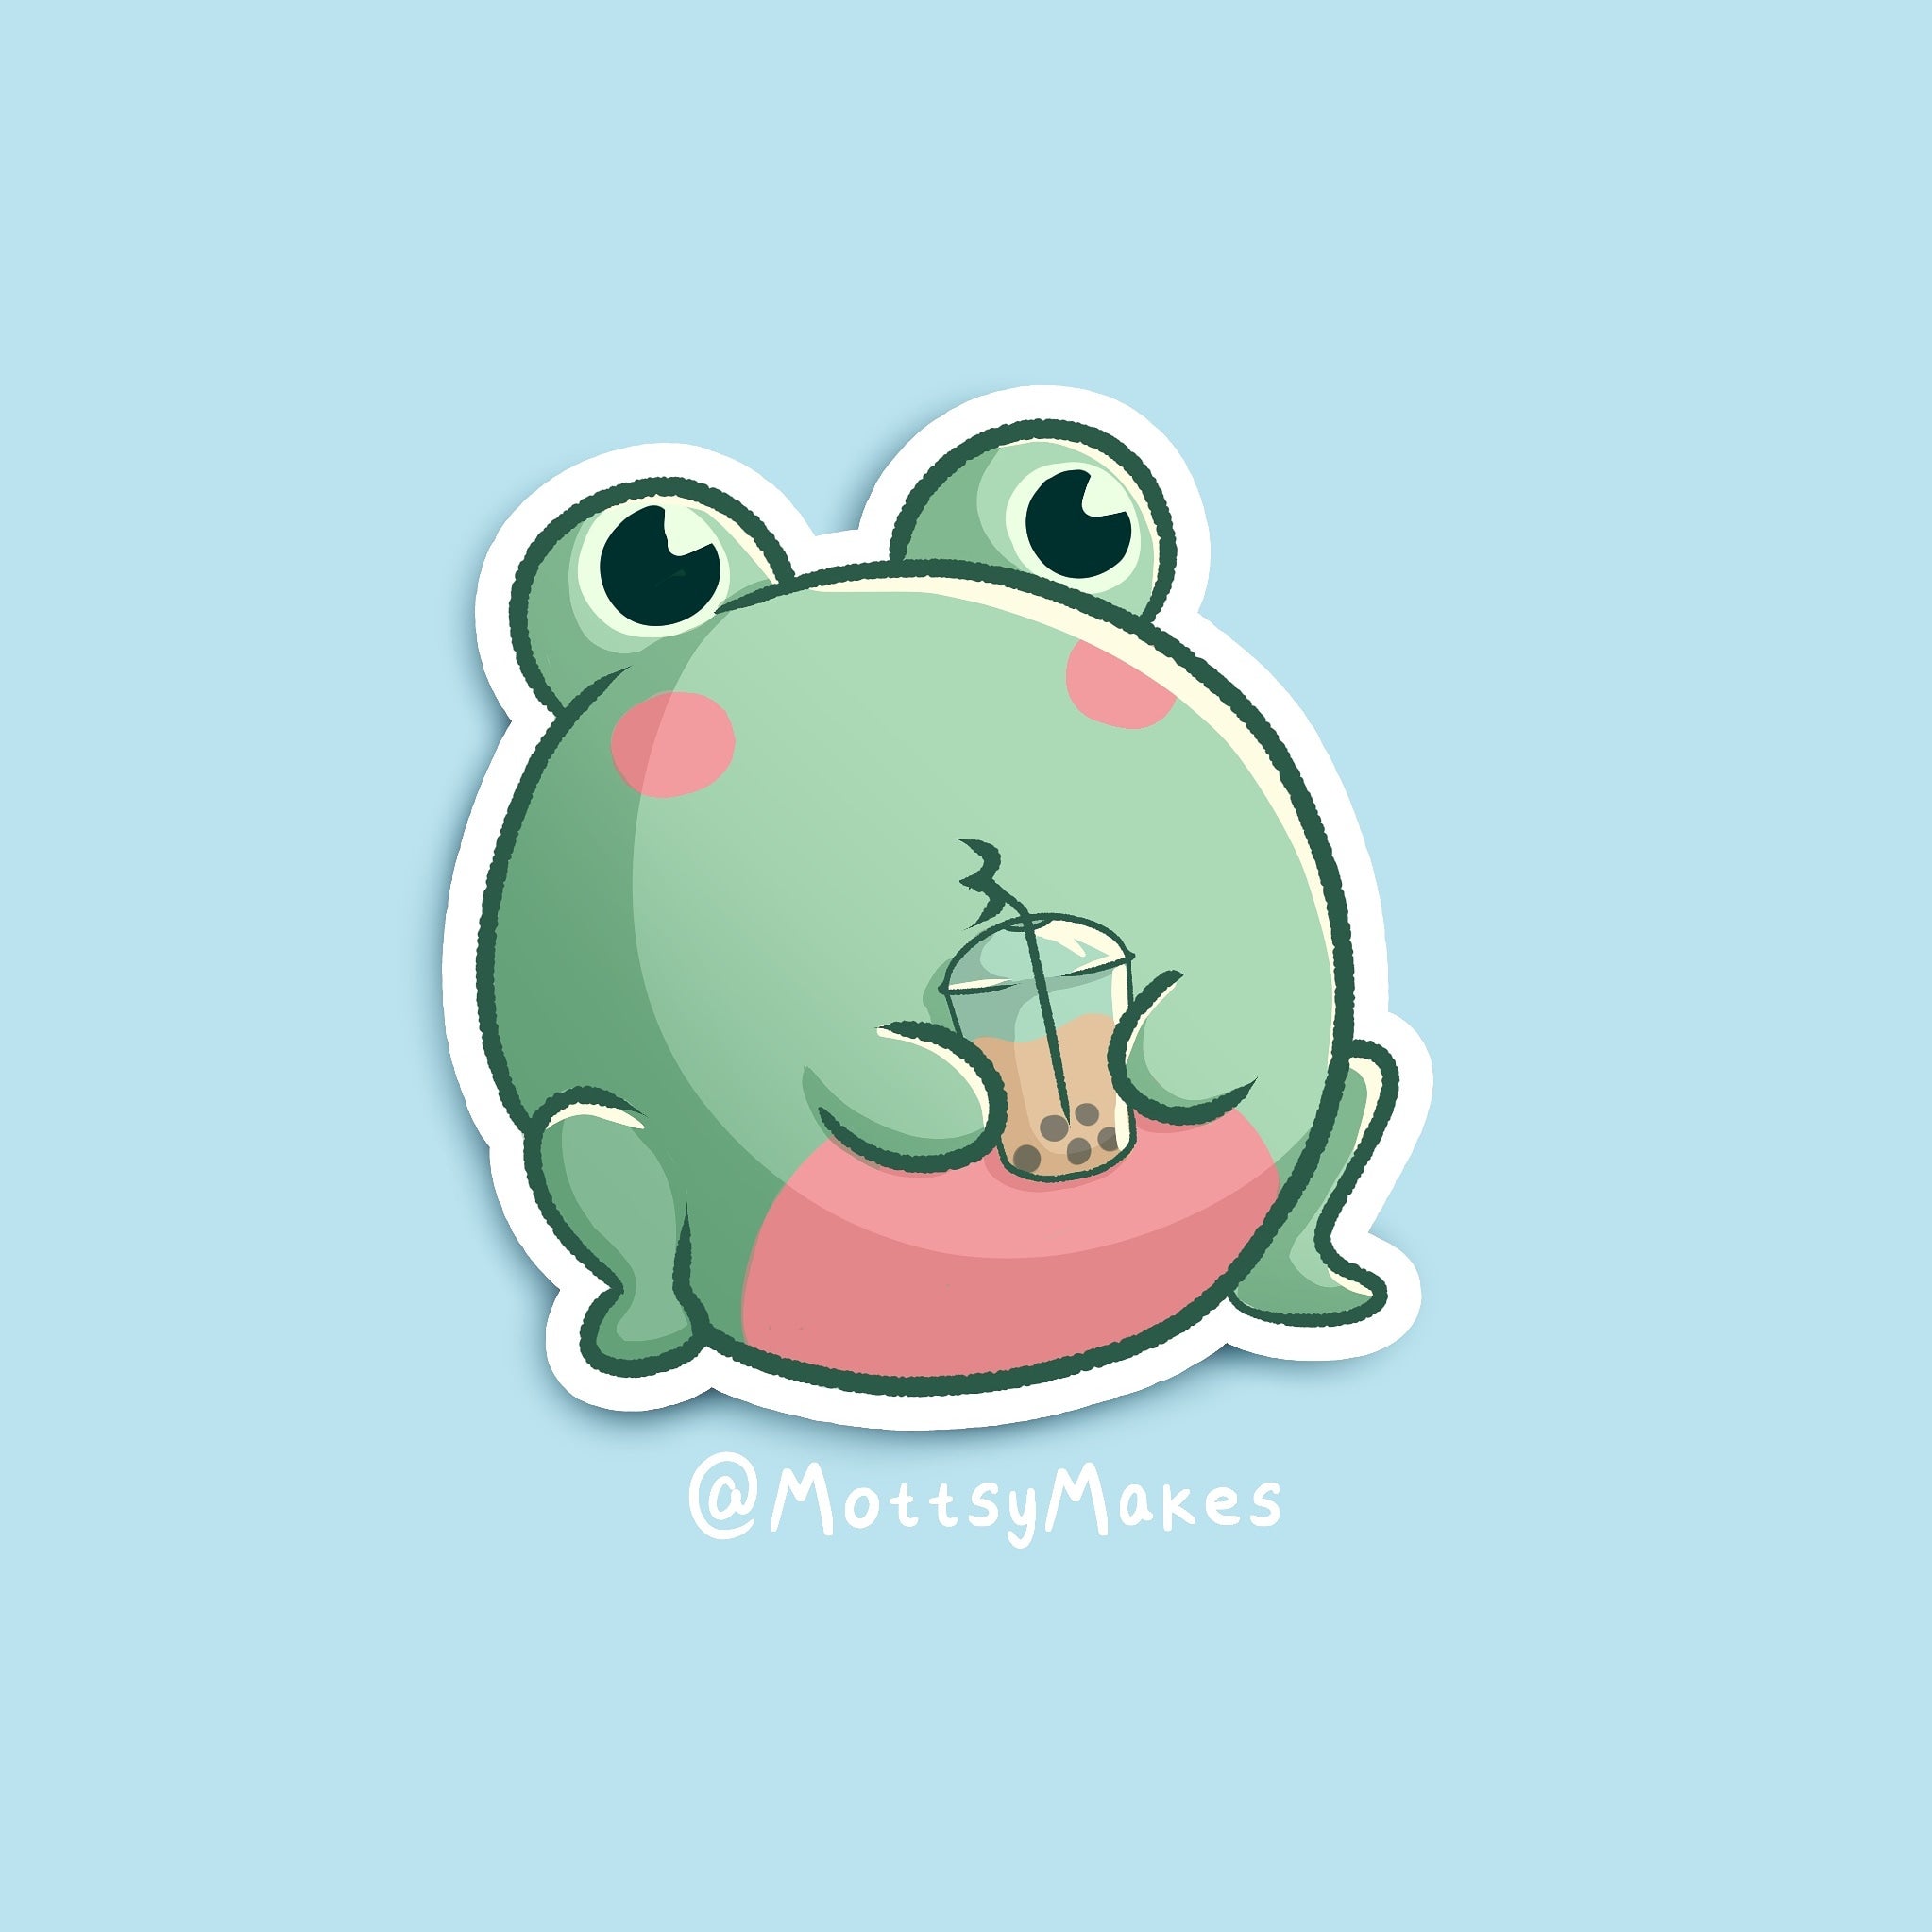 I drew a cute boba tea frog